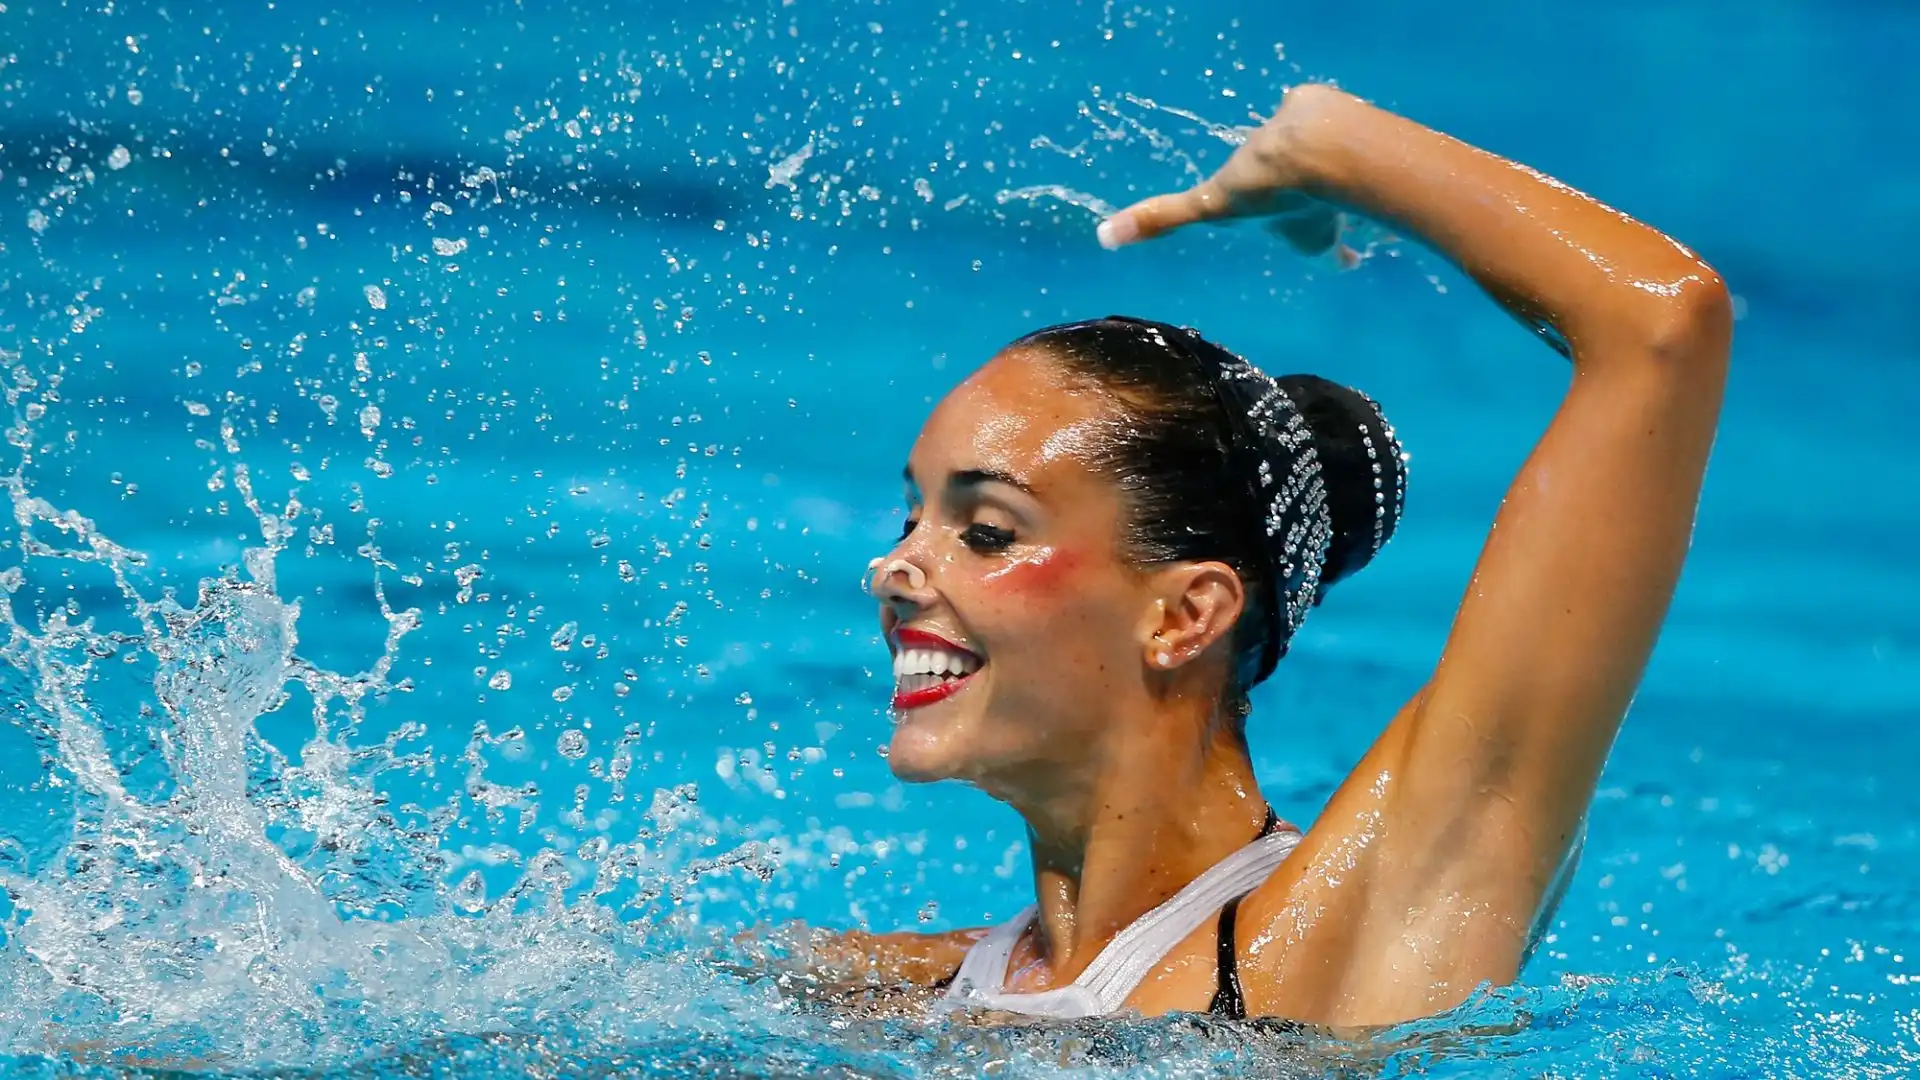 "E' un giorno di cambiamento, di evoluzione. Sono felice e contenta di aver presto questa decisione", ha annunciato la nuotatrice spagnola.